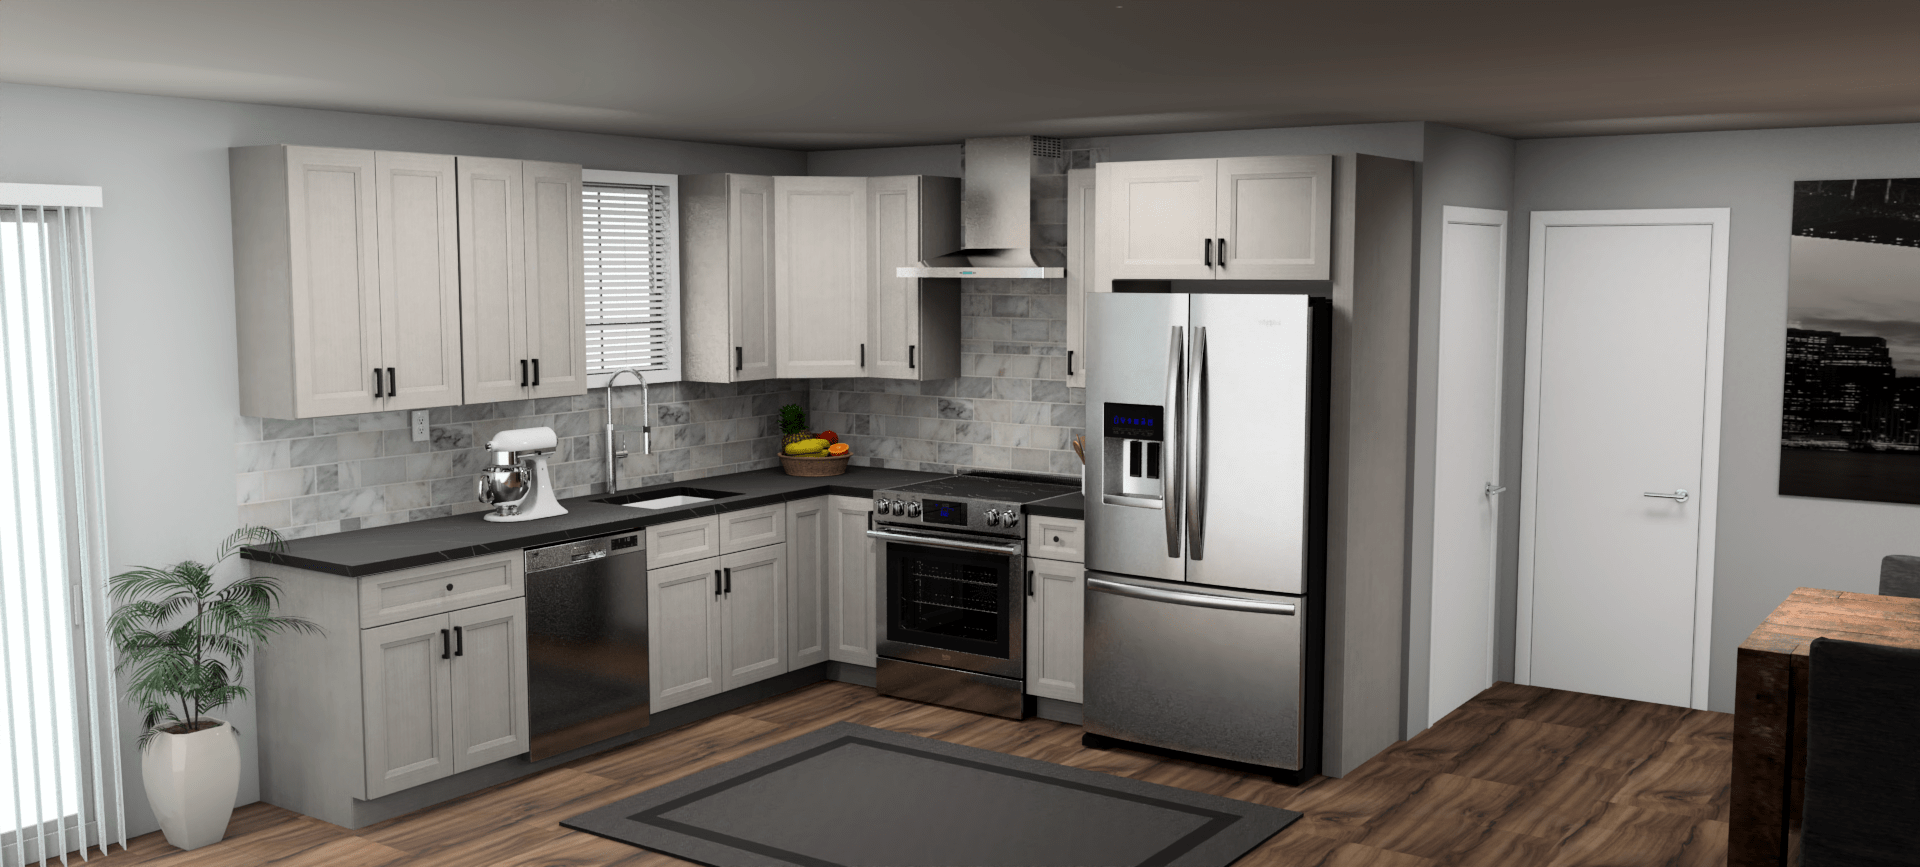 Fabuwood Allure Onyx Horizon 10 x 10 L Shaped Kitchen Main Layout Photo